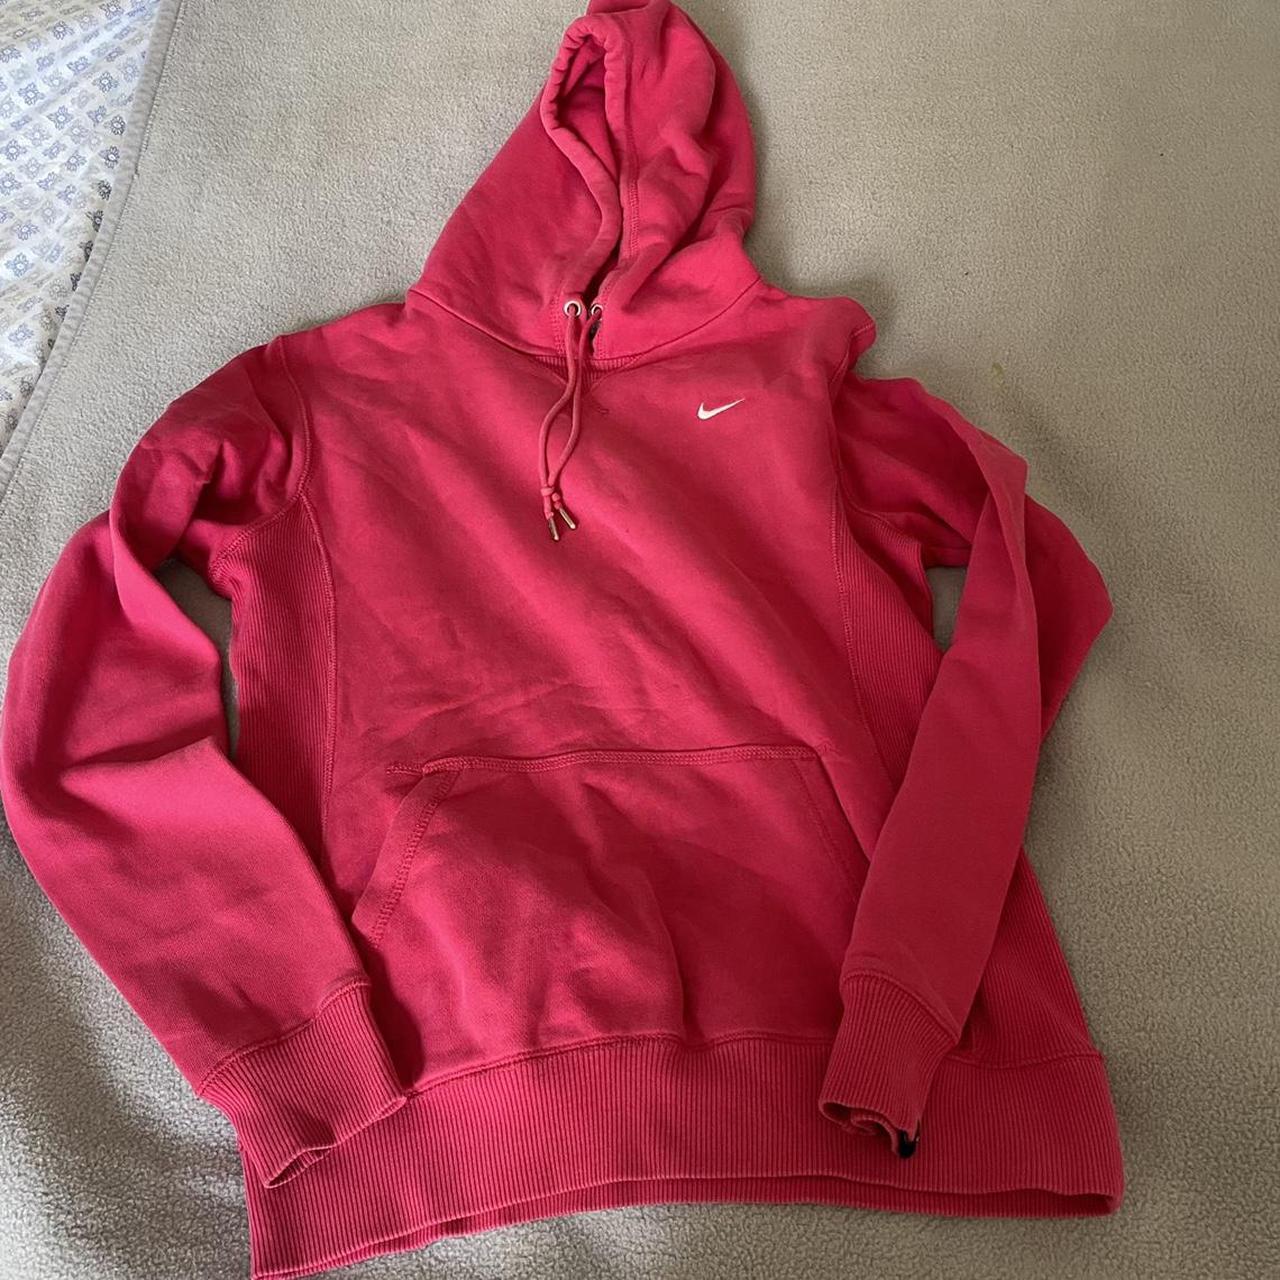 Bright pink / cerise Nike oversized hoodie / hoody /... - Depop